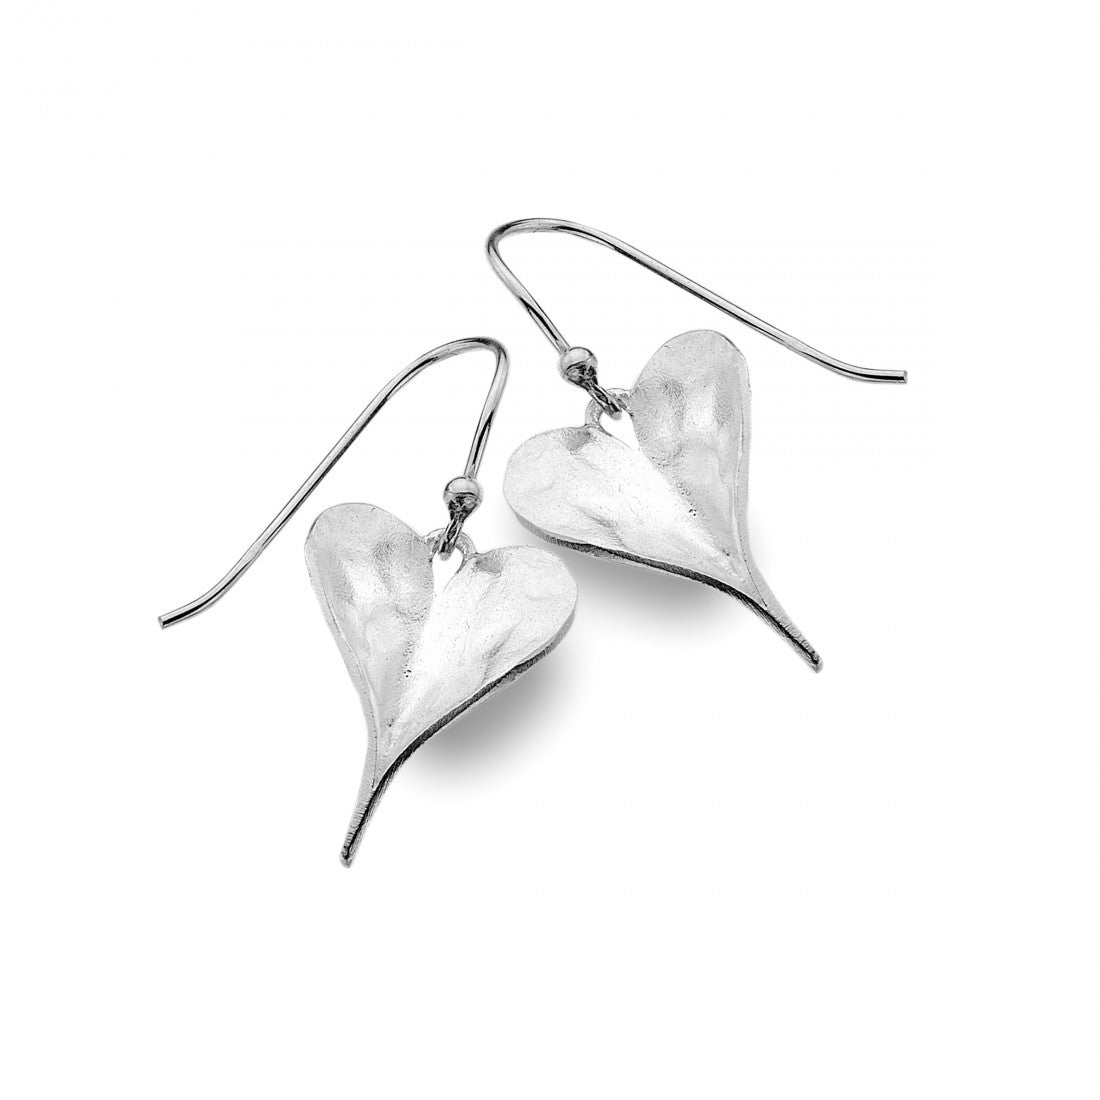 Heart Shaped Leaf Earrings - The Nancy Smillie Shop - Art, Jewellery & Designer Gifts Glasgow